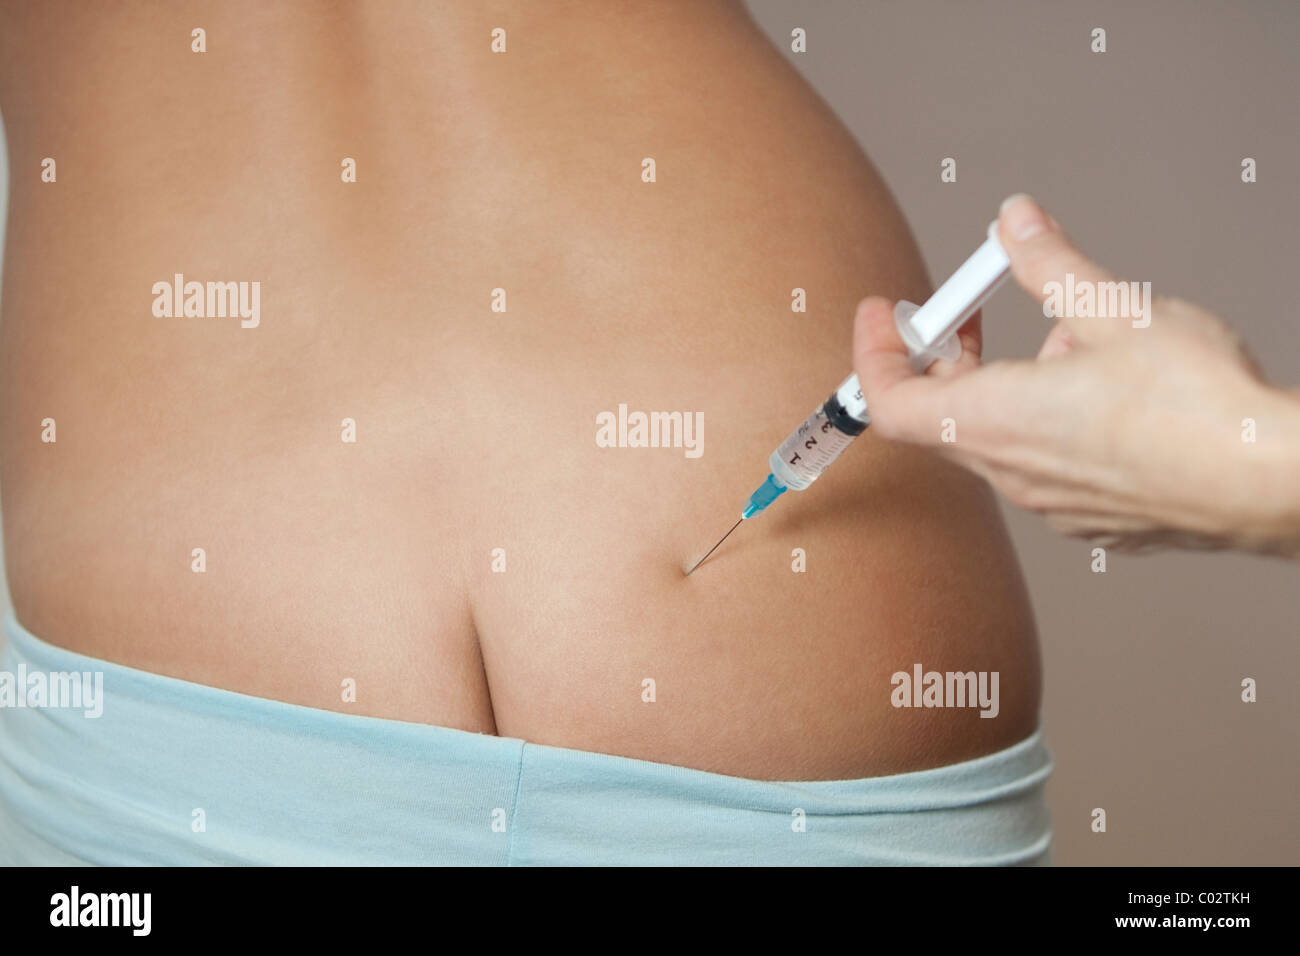 Injektion in das Gesäß einer Frau Stockfotografie - Alamy